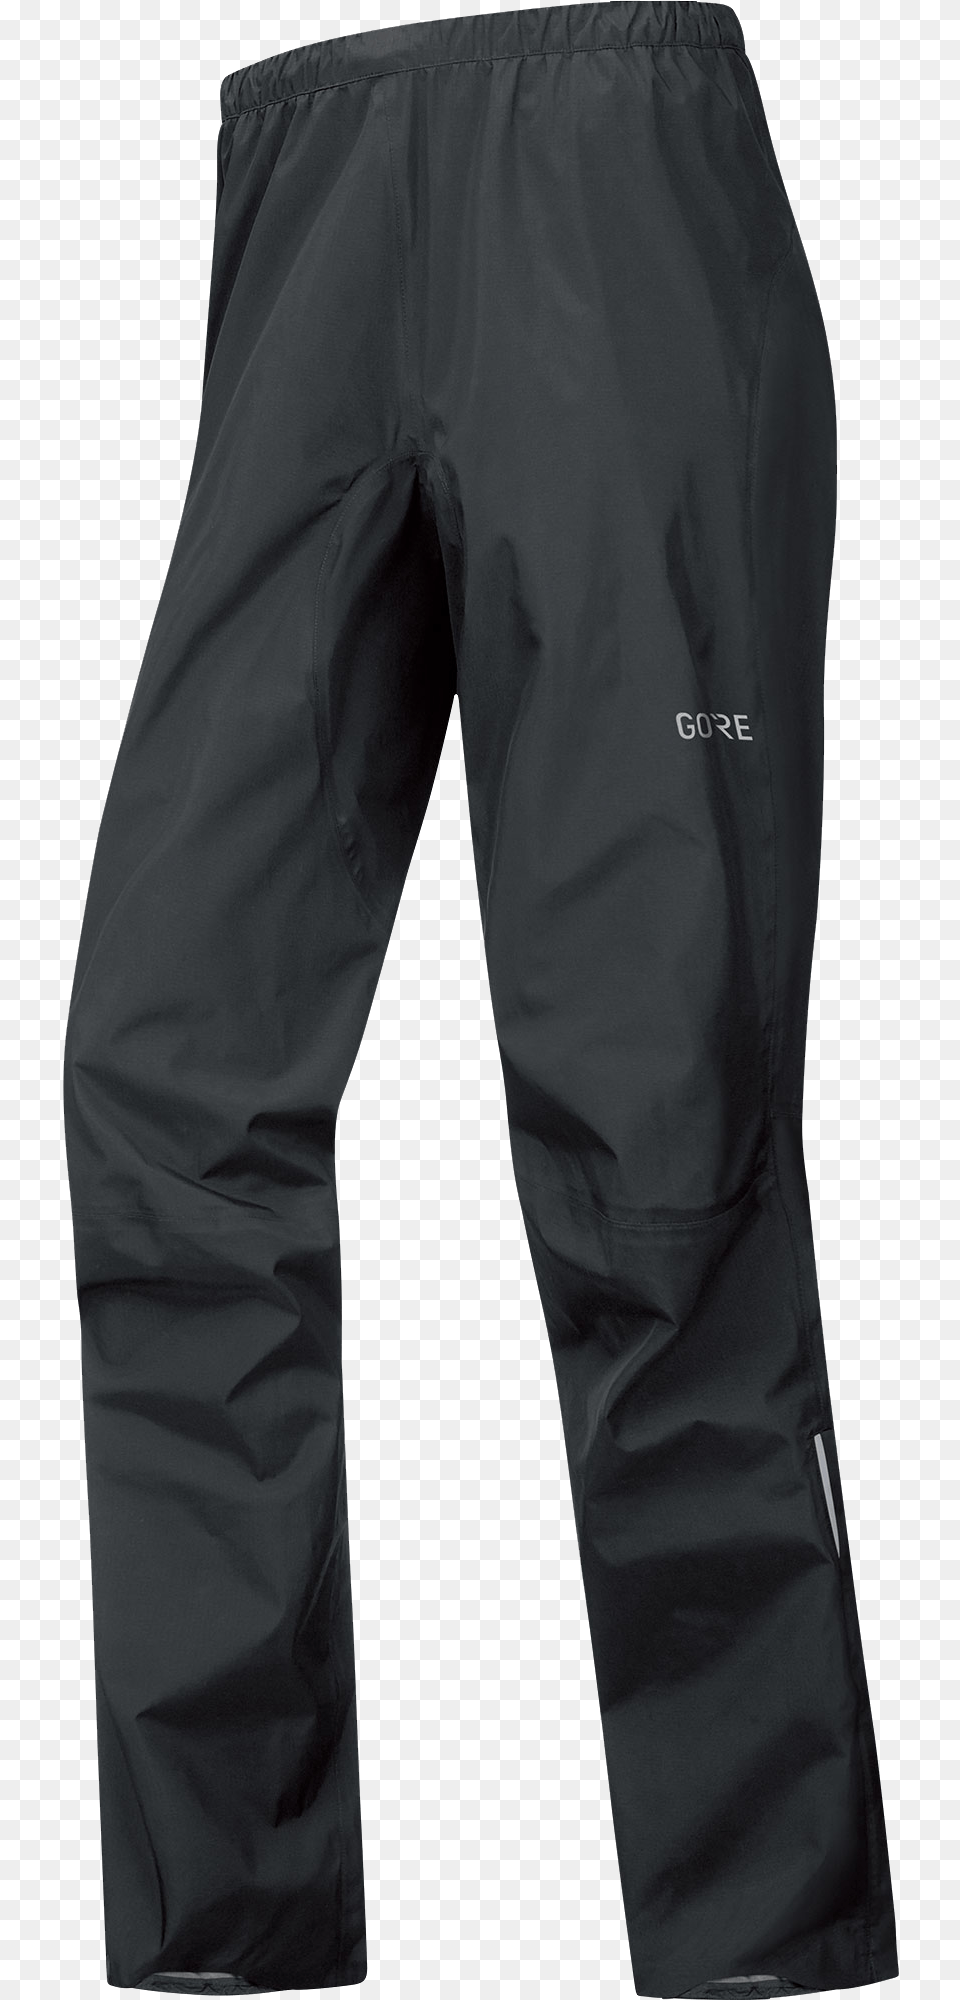 Gore Wear C5 Active Trail Mtb Pants Pantalon De Travail Noir, Clothing, Coat, Jeans Free Png